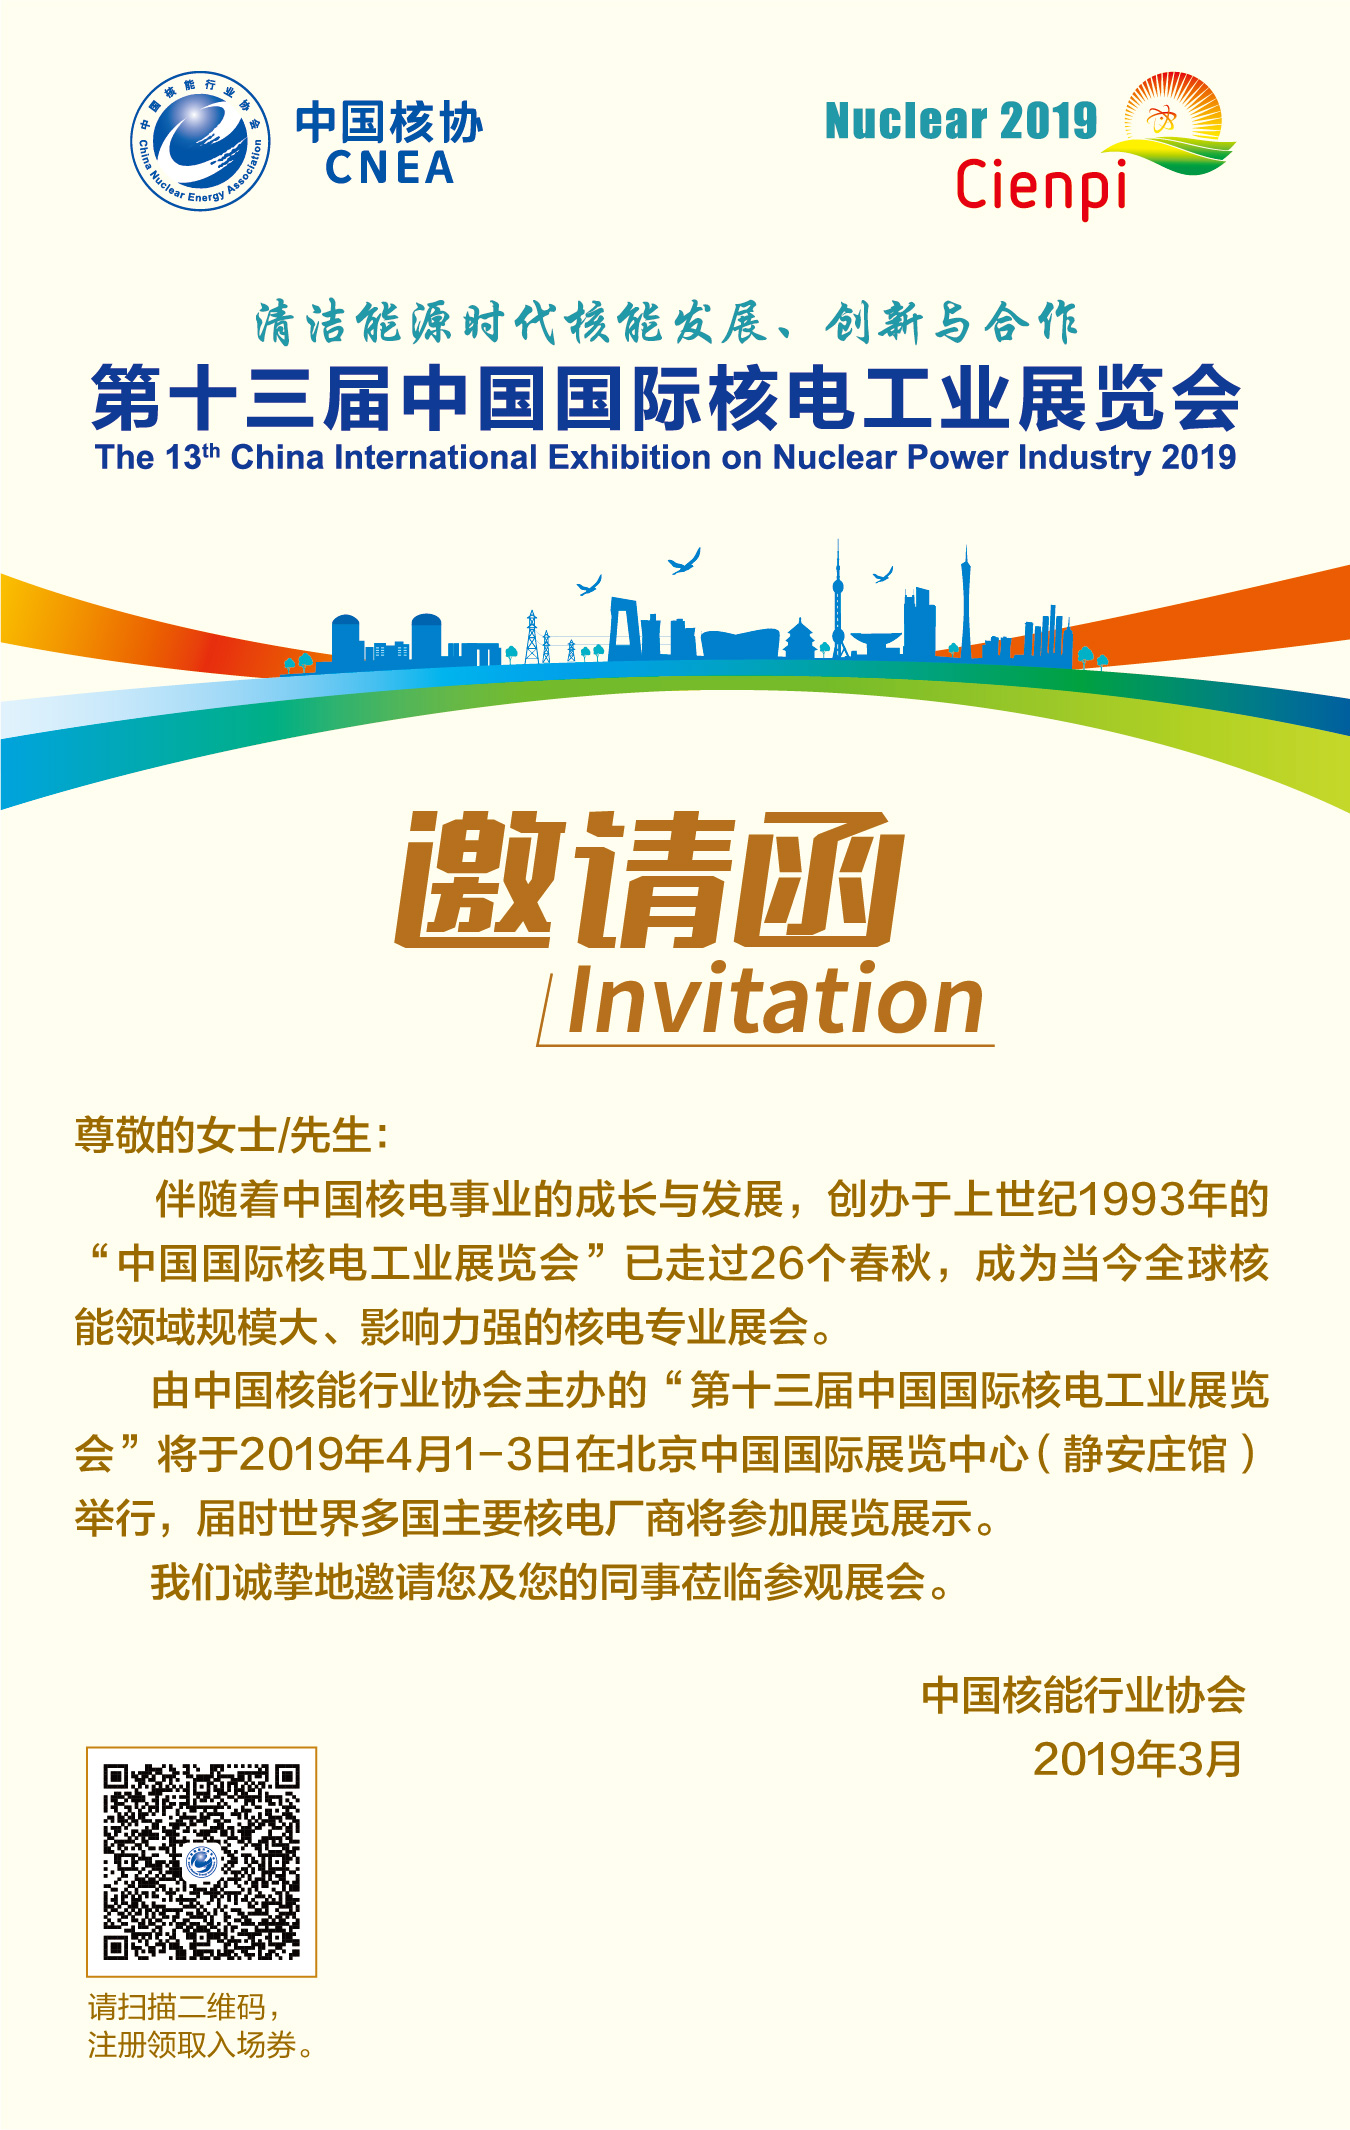 3.第十三届中国国际核电工业展览会邀请函.jpg